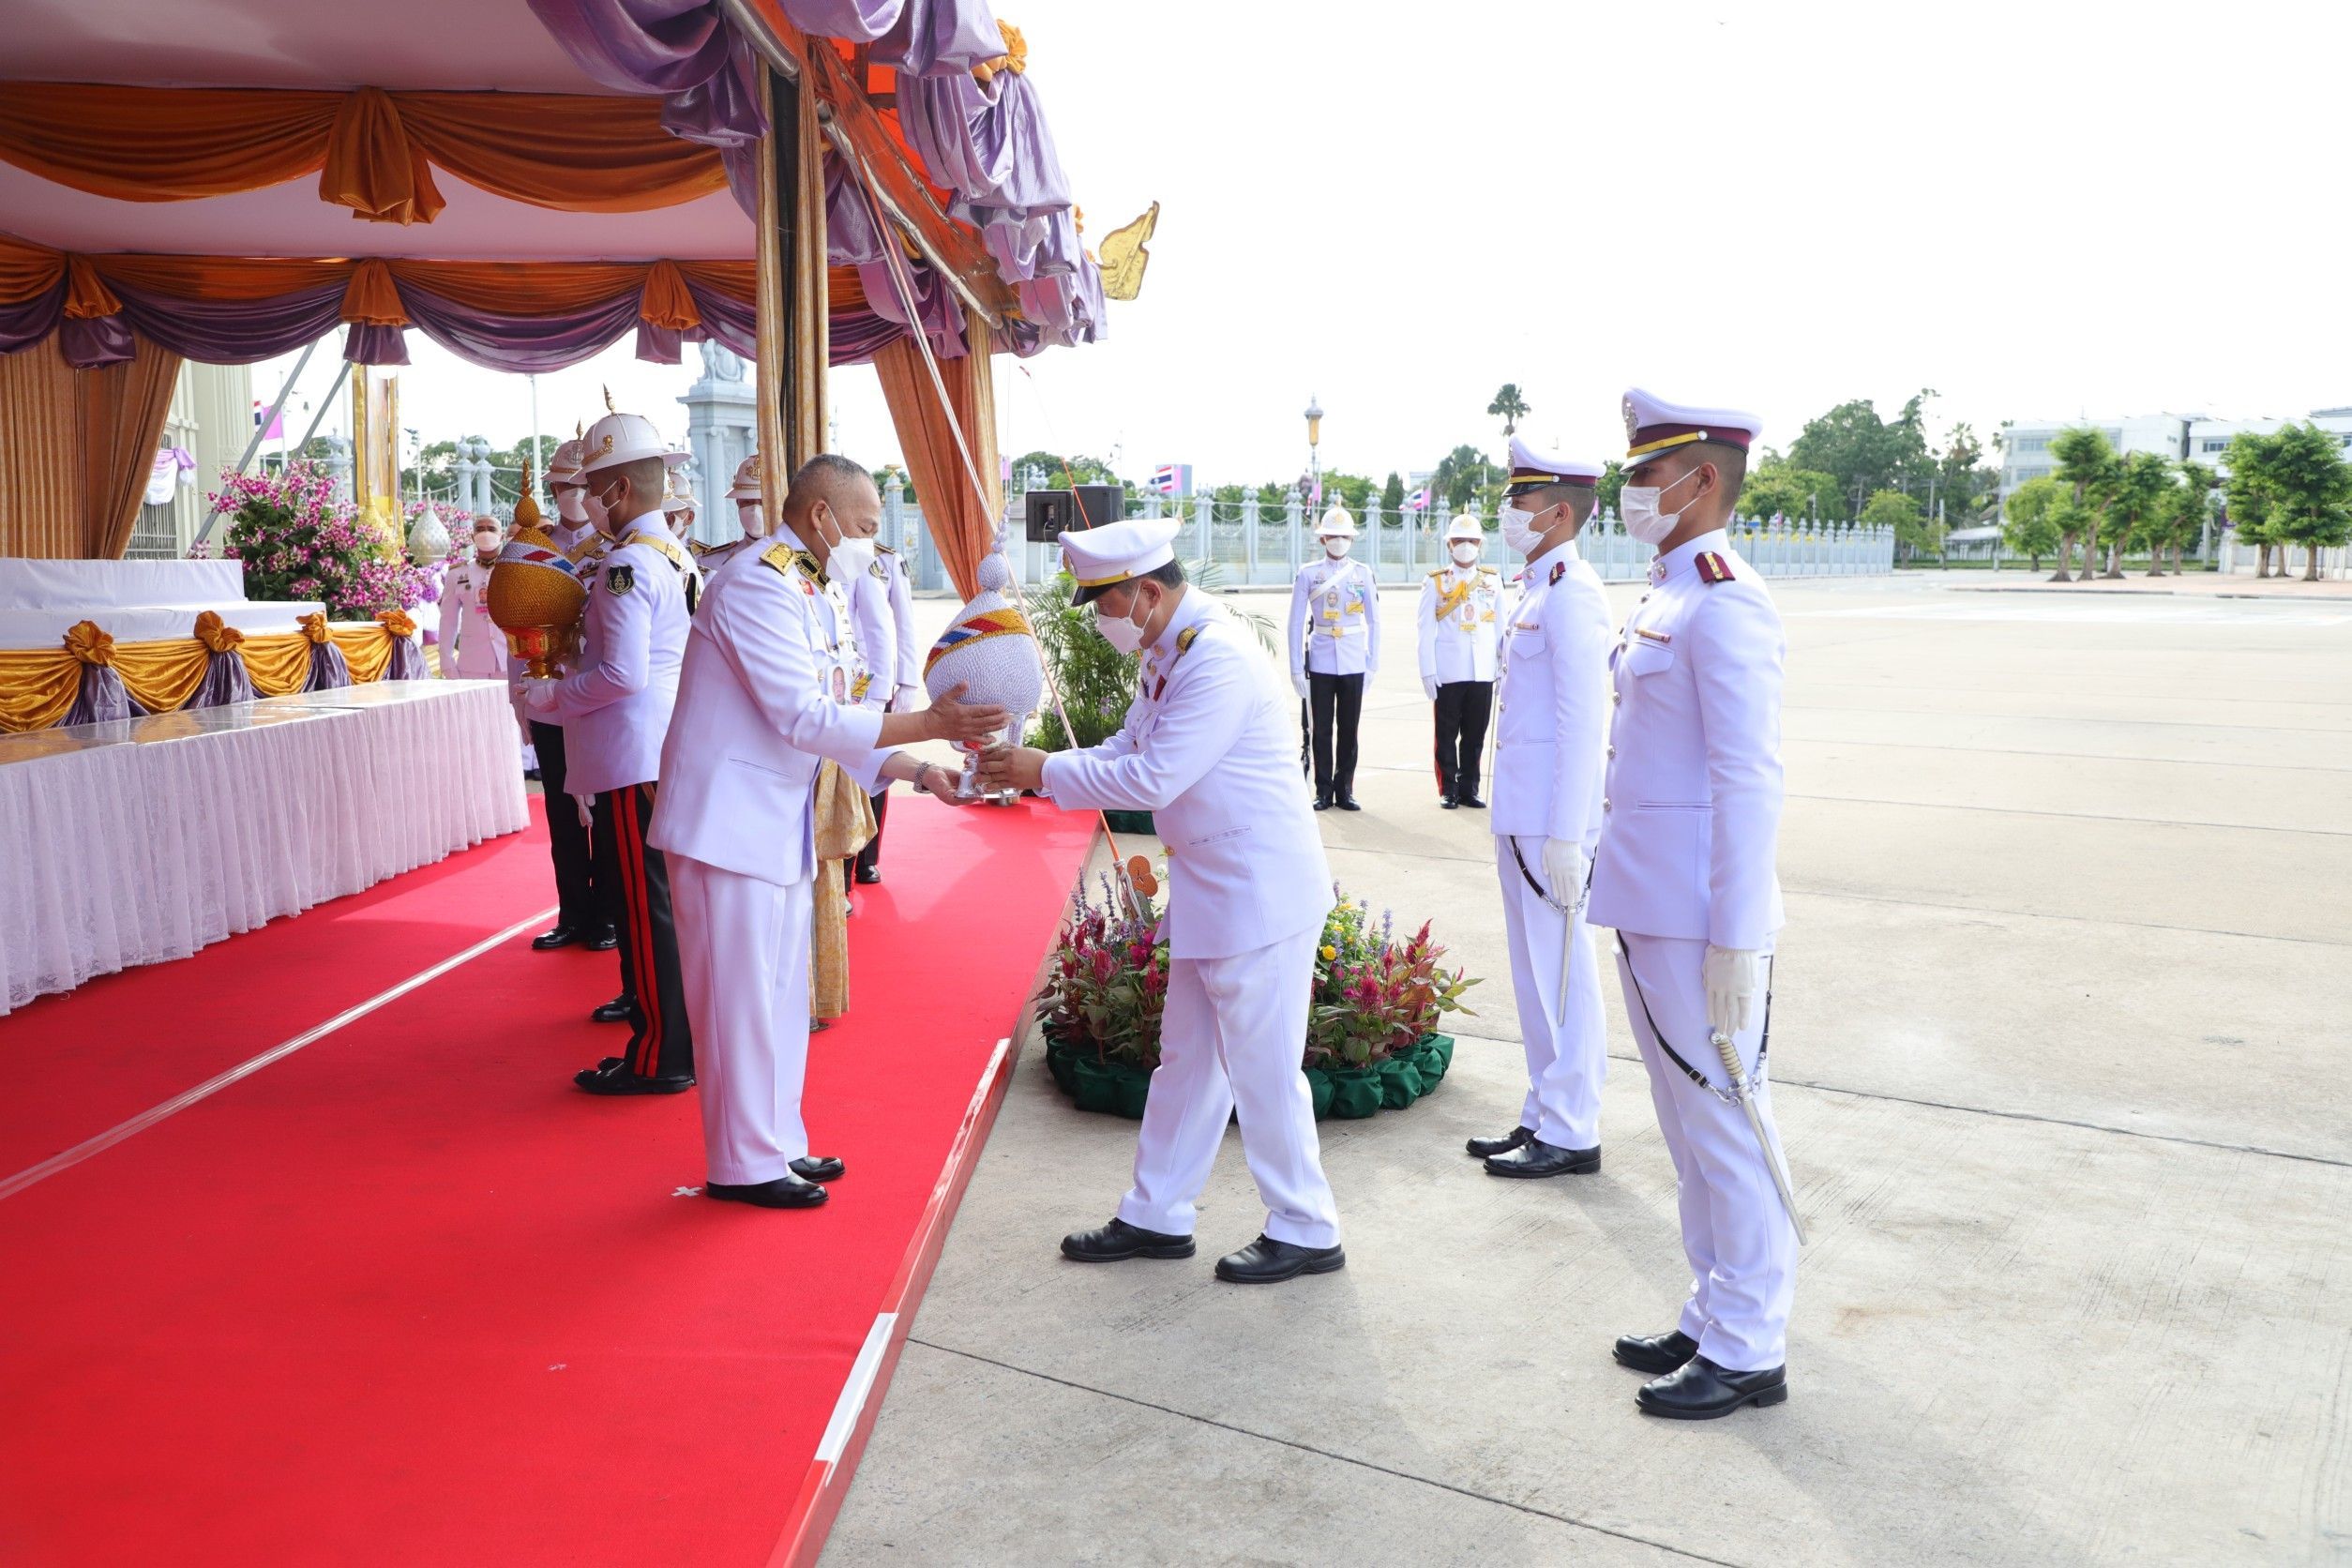 ปลัดกระทรวงมหาดไทยอัญเชิญเครื่องราชสักการะและพานพุ่มไปทูลเกล้าฯ ถวาย สมเด็จพระนางเจ้าฯ พระบรมราชินี  เนื่องในโอกาสวันเฉลิมพระชนมพรรษา